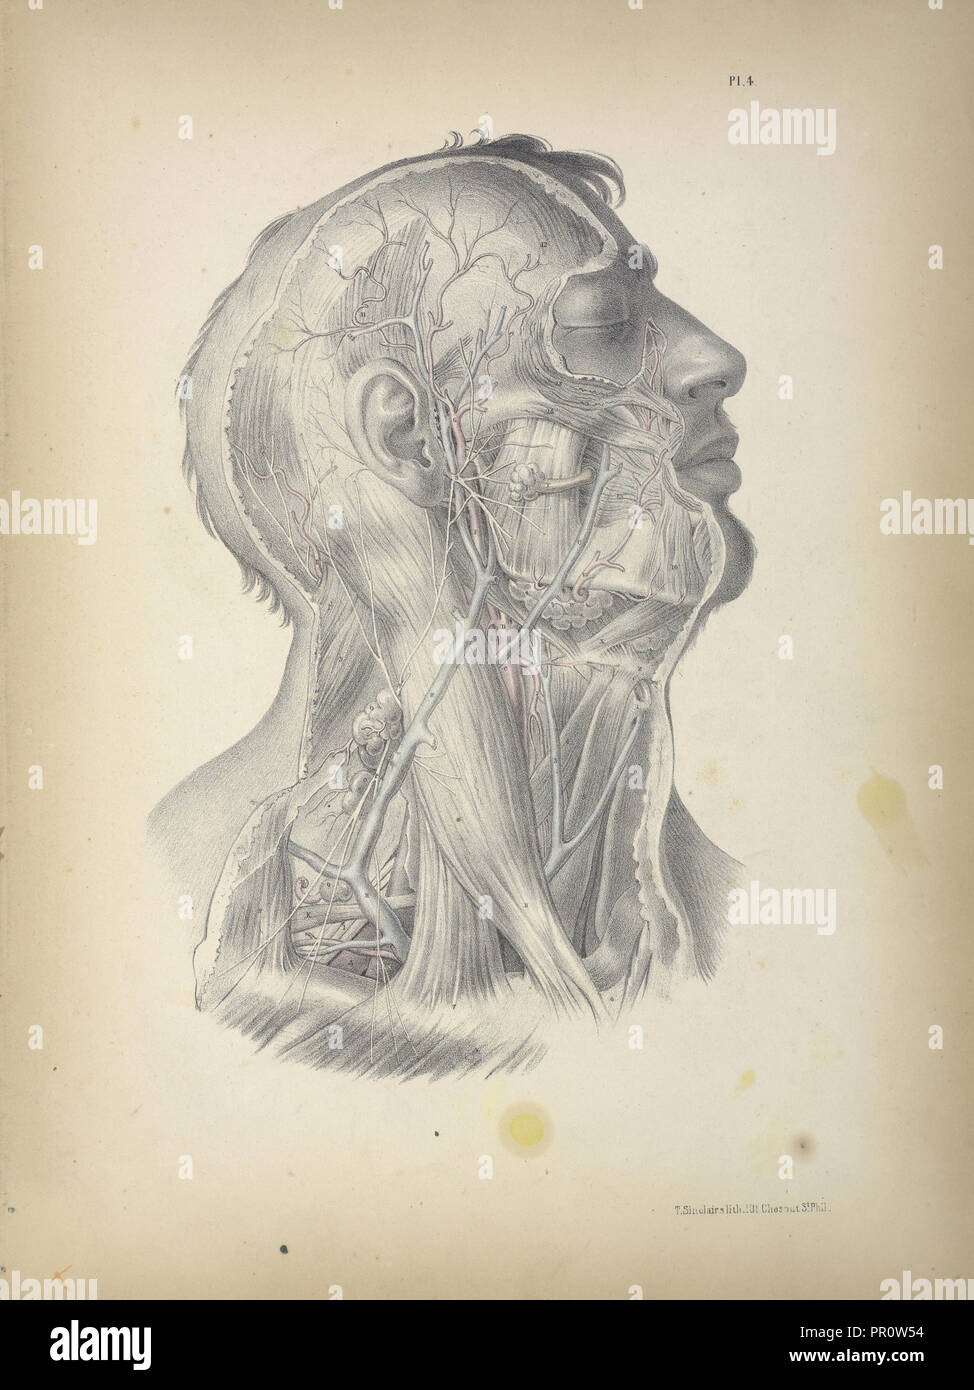 Pl. 4, chirurgische Anatomie, Maclise, Joseph, Lithographie, 1851, farbige Lithographie. Maclise ist der Autor und Illustrator Stockfoto